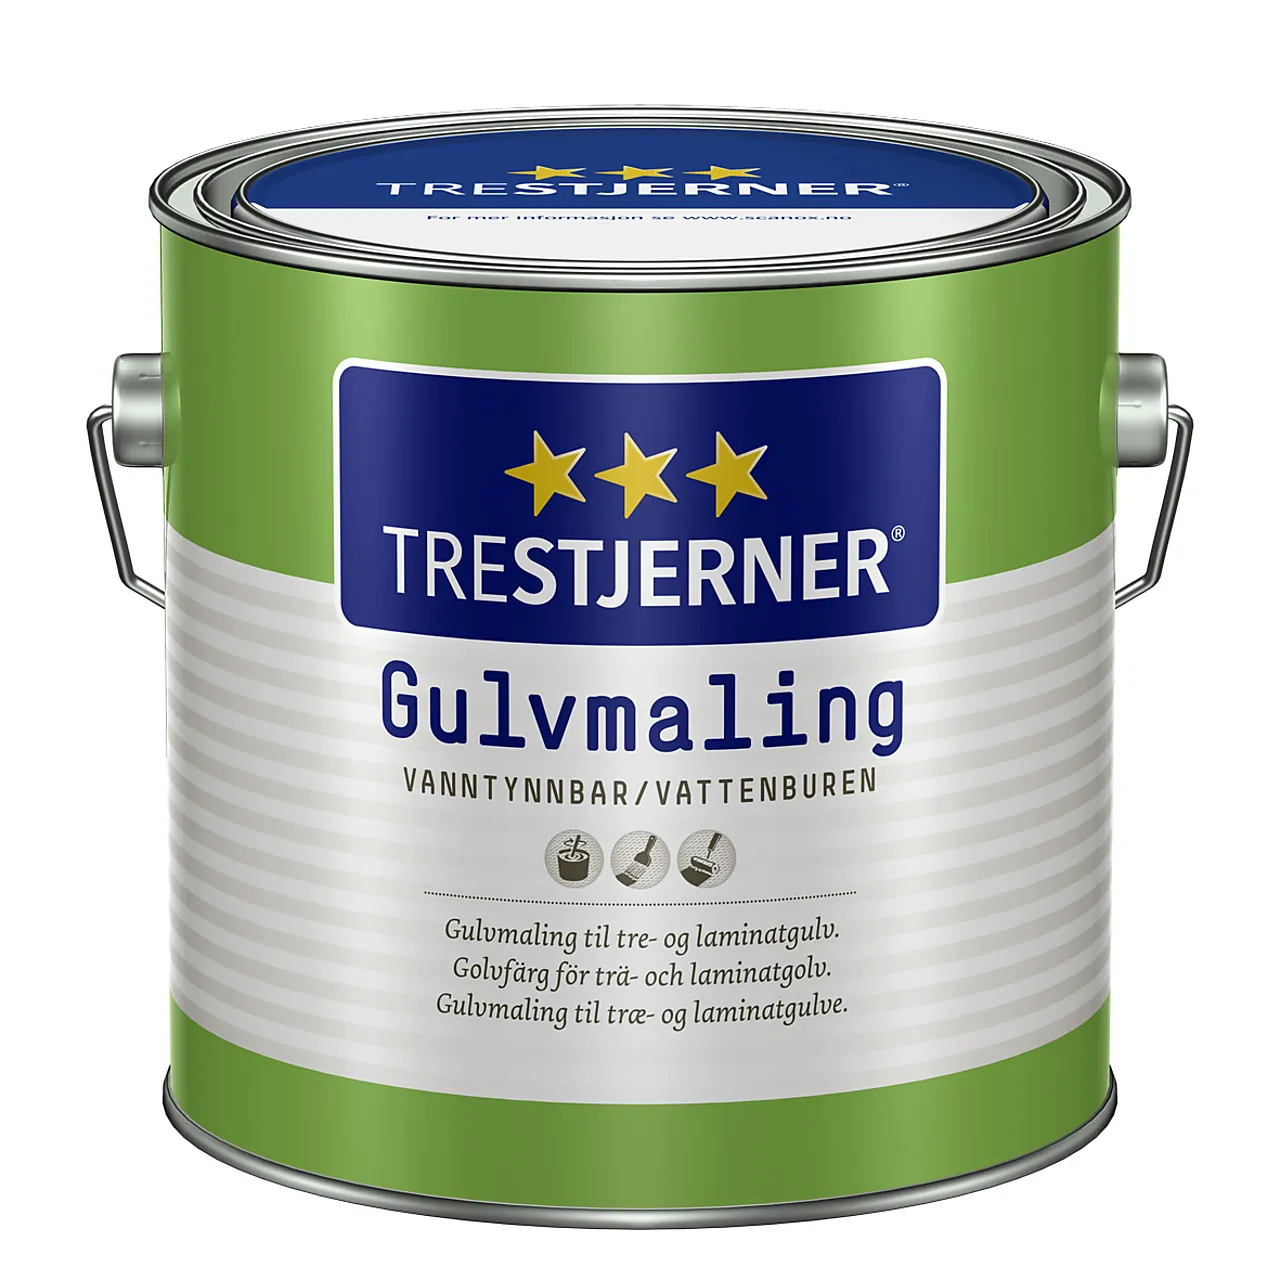 Trestjerner Gulvmaling matt B Base 2,7 liter null - null - 1